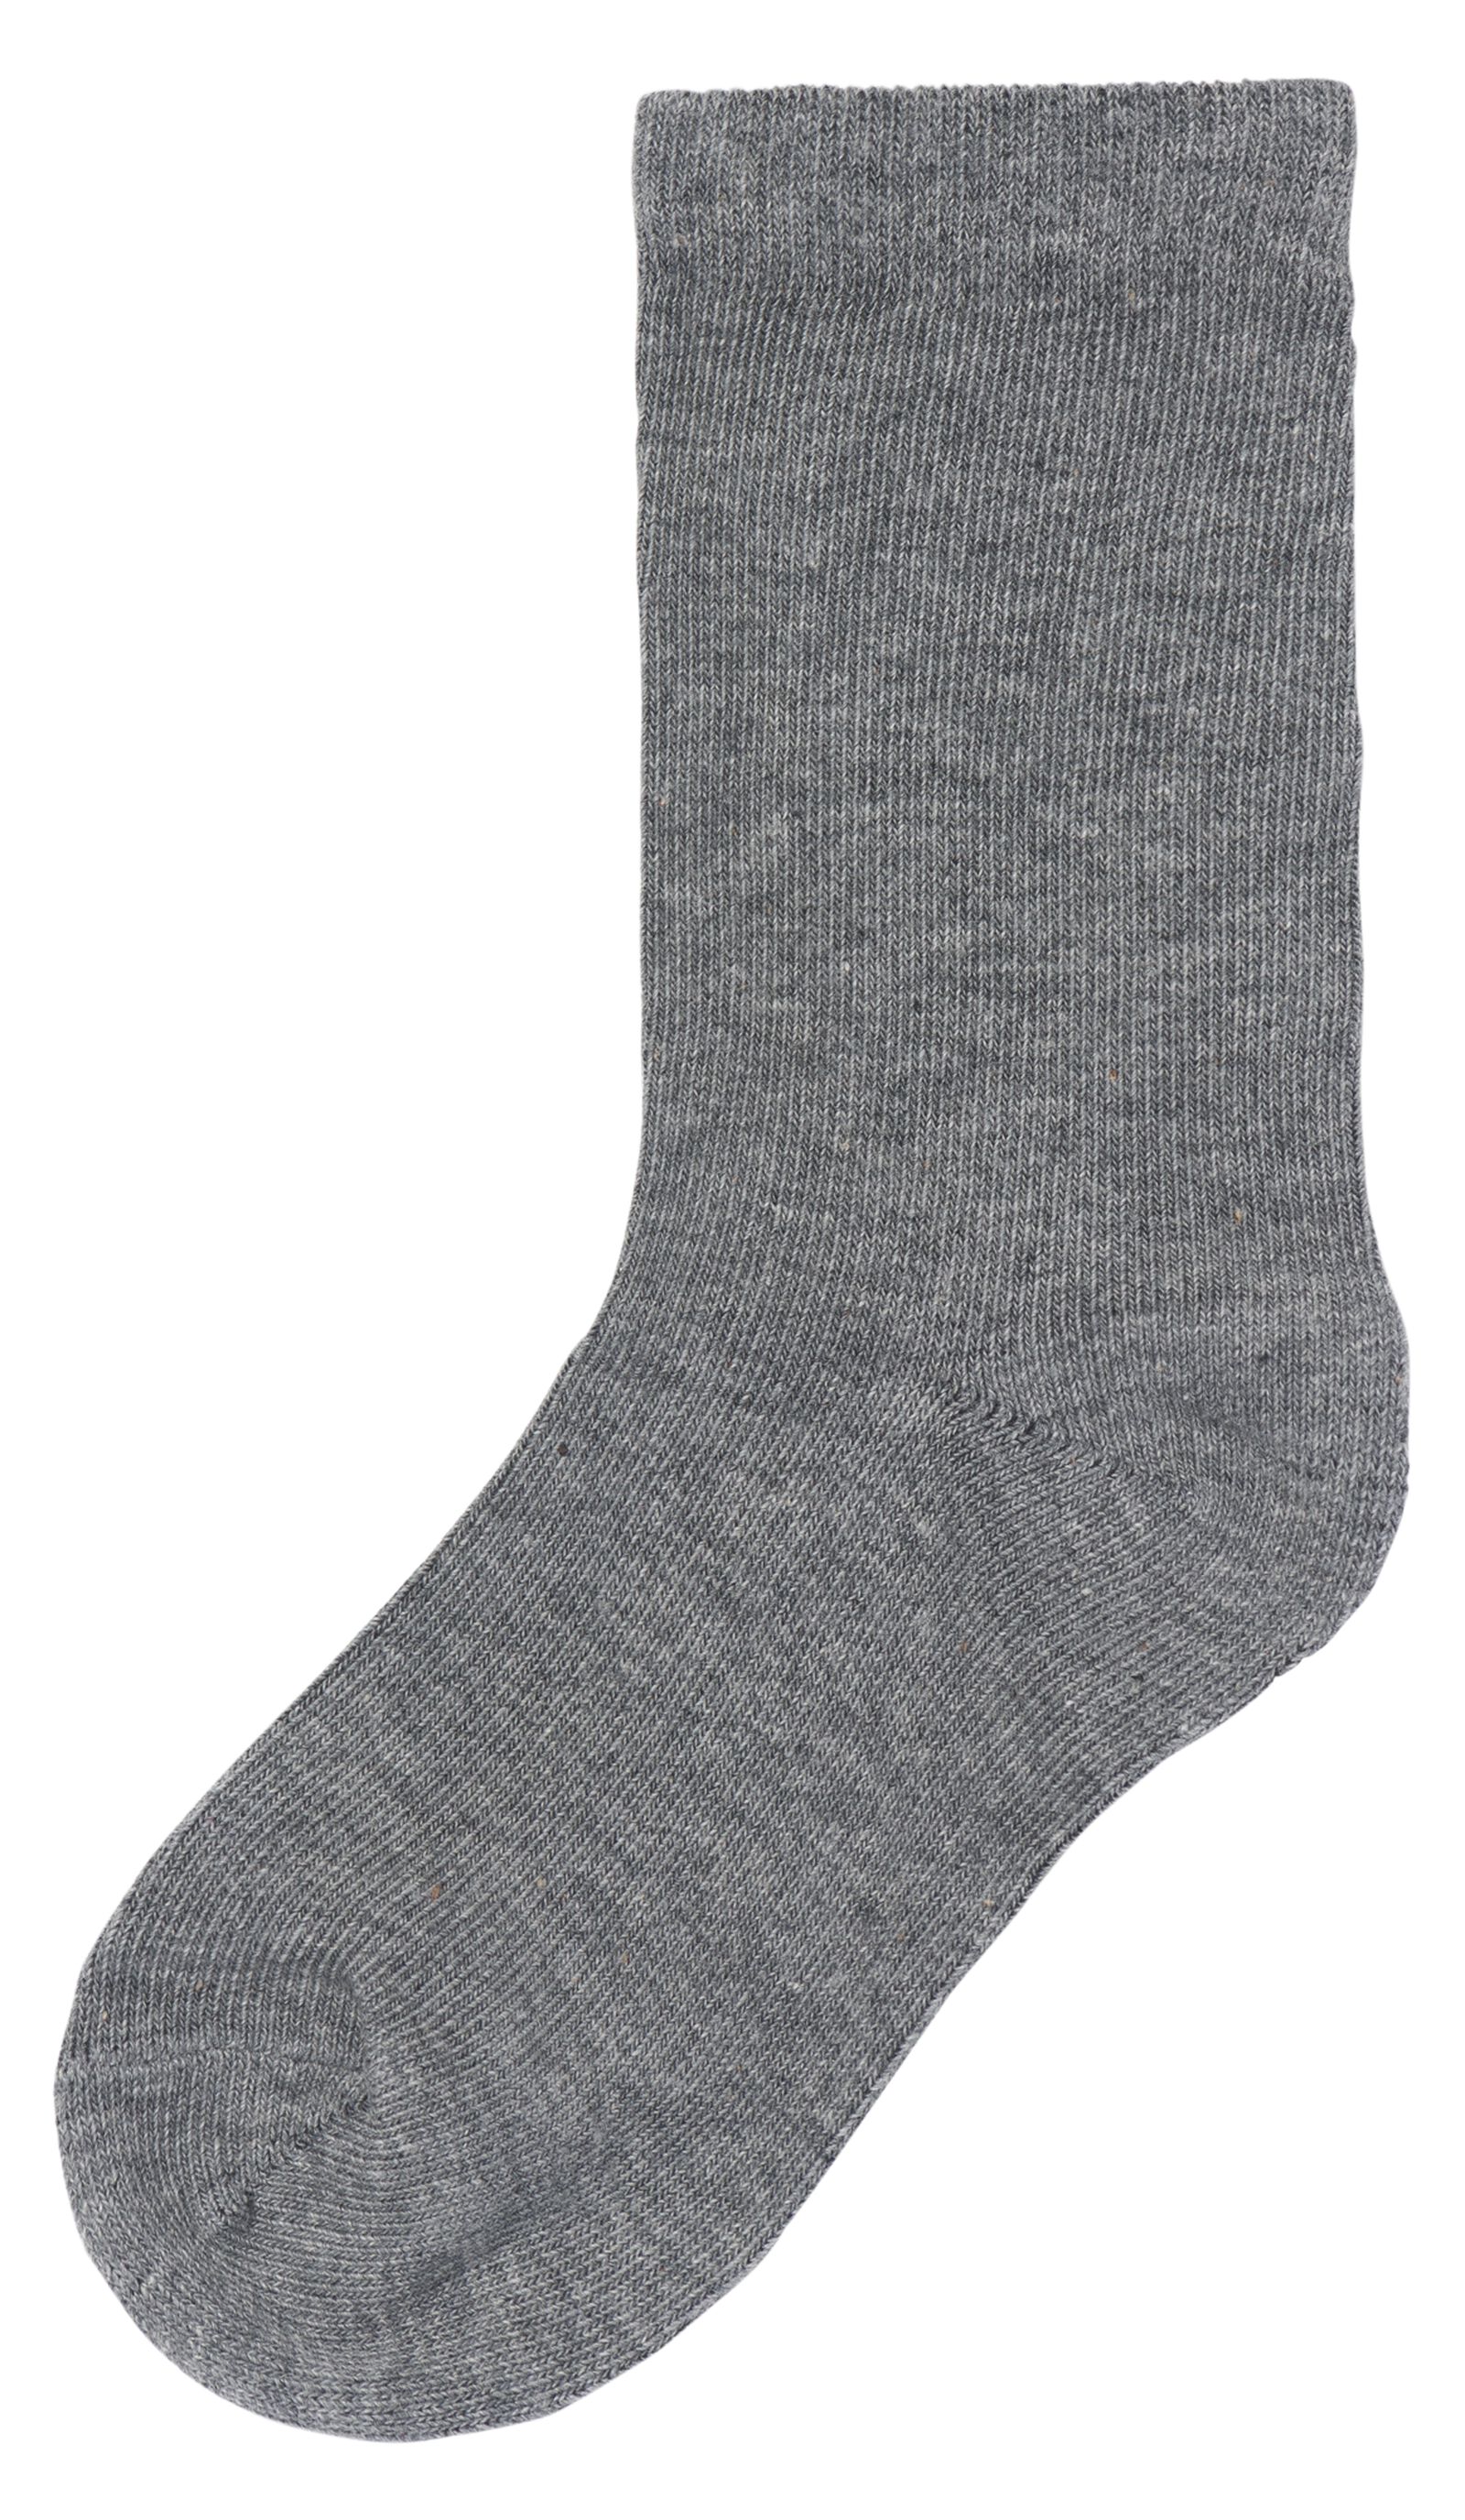 kinder sokken met katoen - 5 paar blauw 27/30 - 4360072 - HEMA